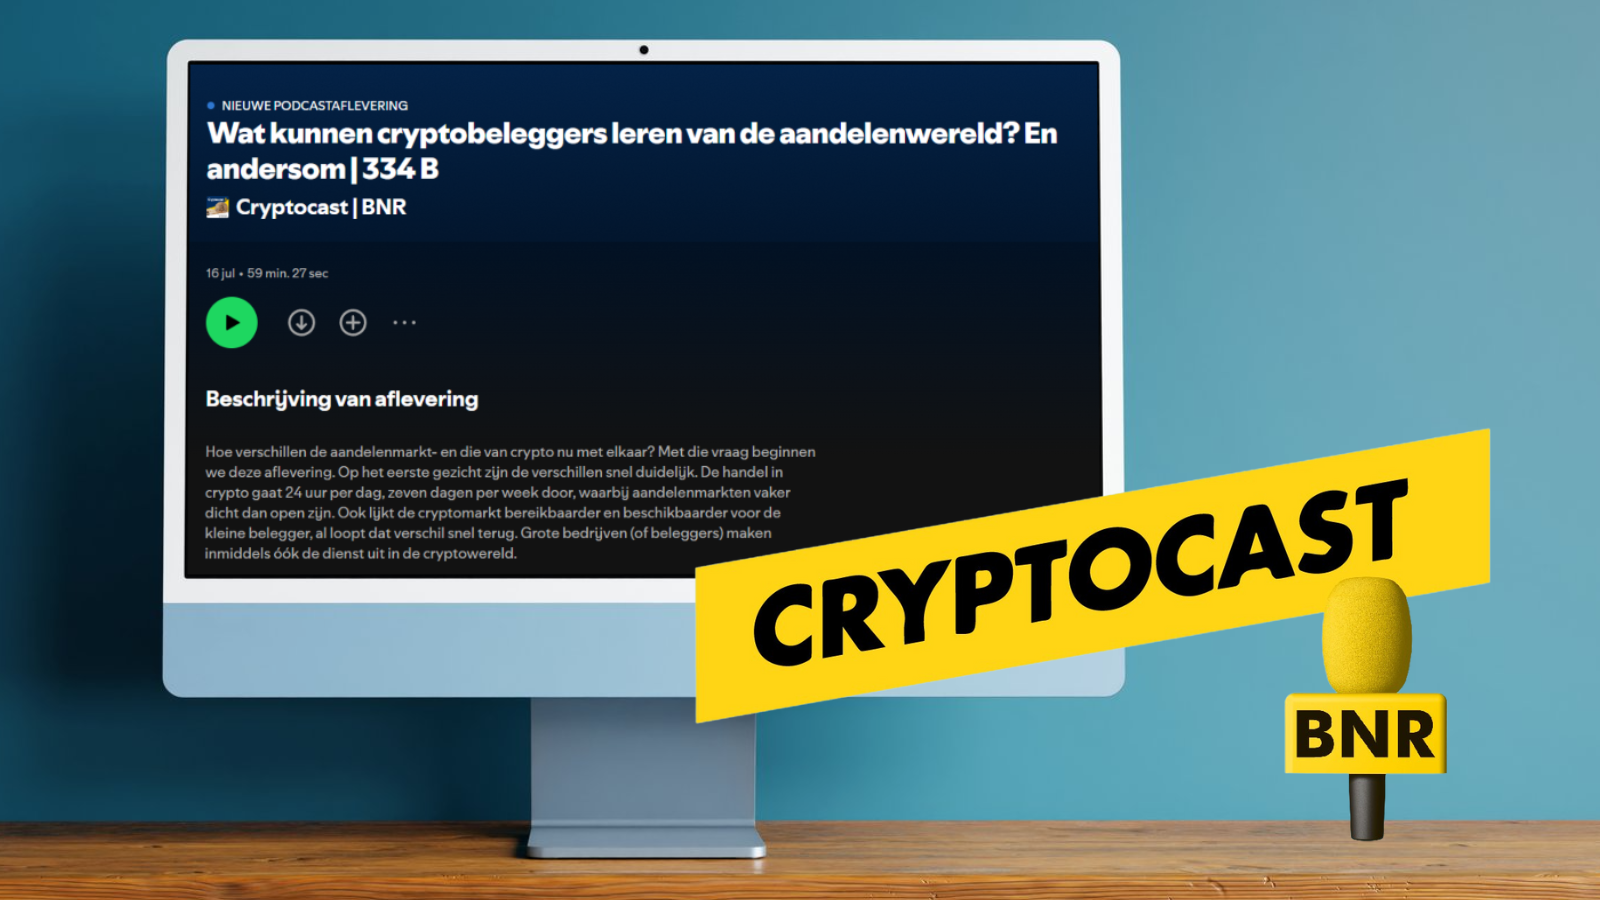 "Wat kunnen cryptobeleggers leren van de aandelenwereld?" - BNR Cryptocast